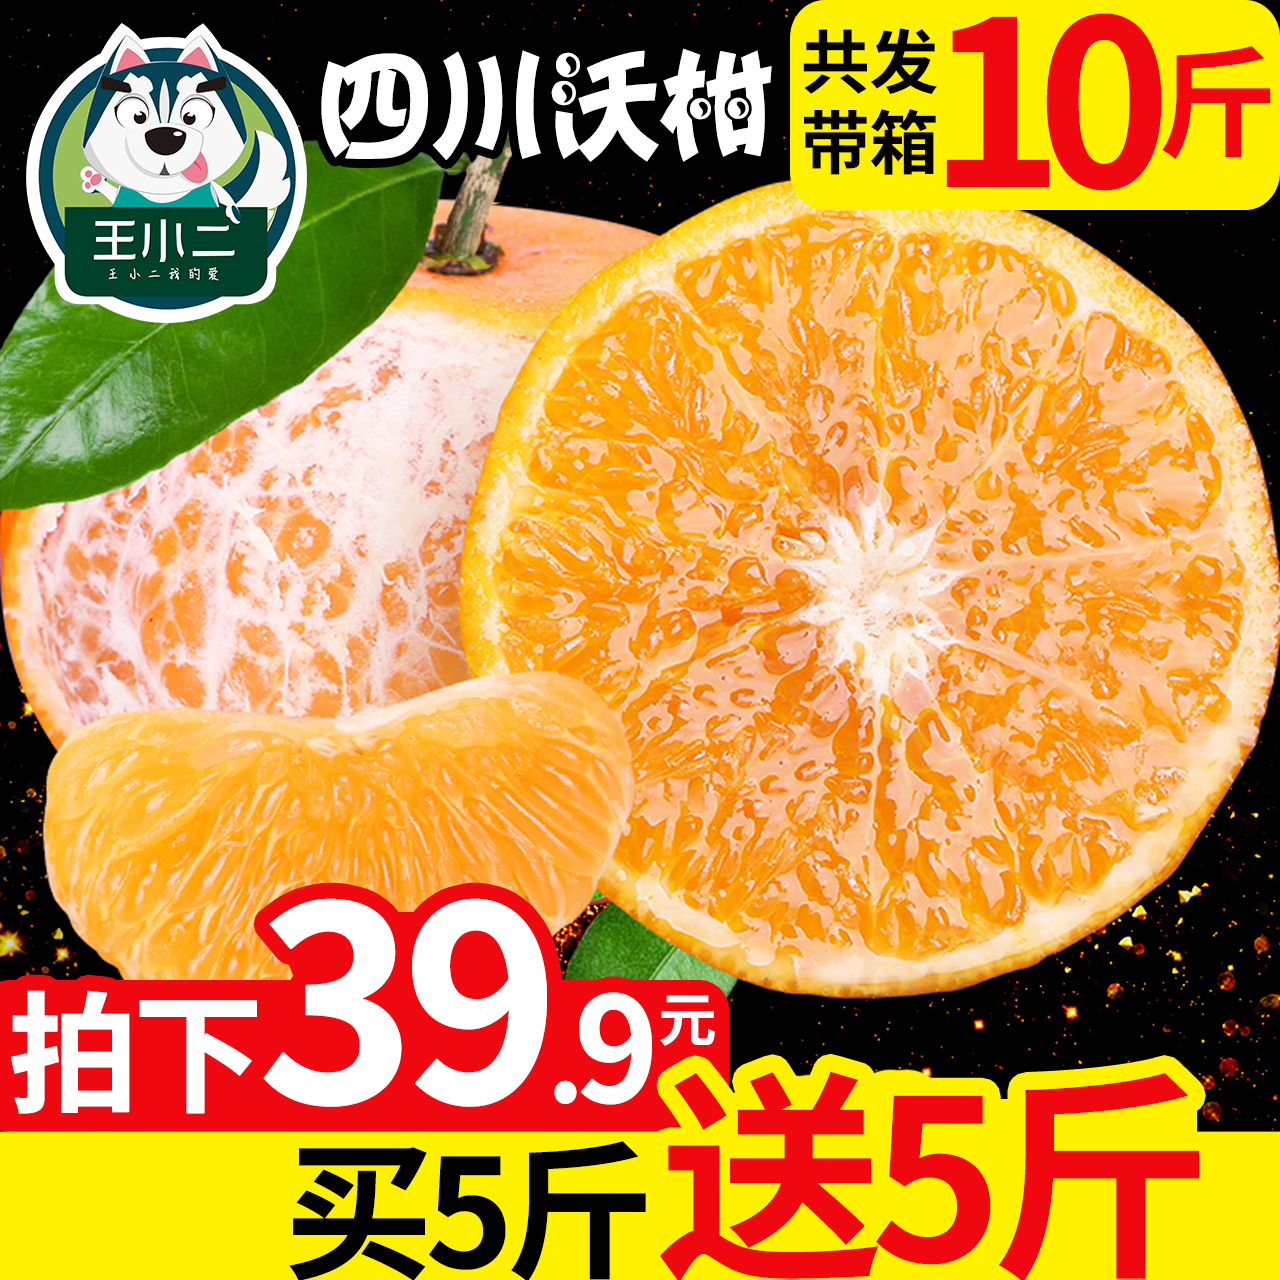 【买一送一】沃柑橘子水果批发桔子新鲜包邮当季贡柑皇帝带箱10斤